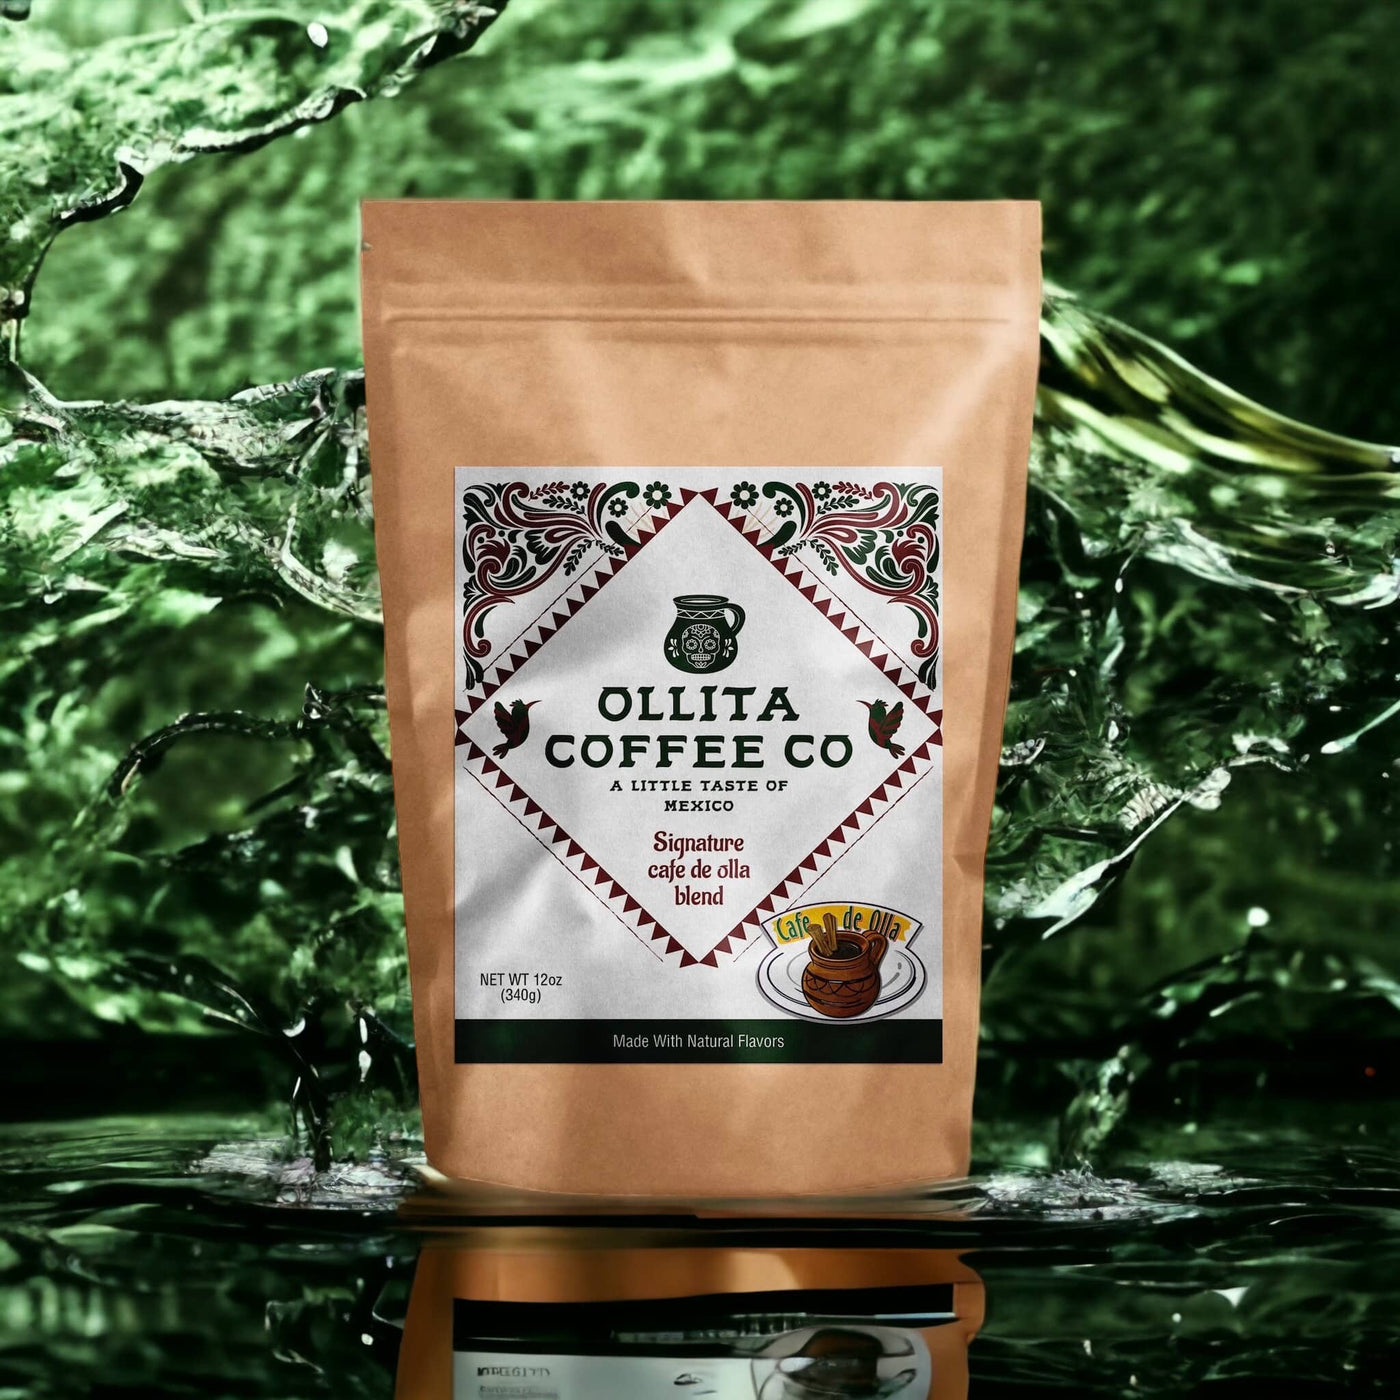 Cafe de olla Bags - Ollita Coffee Company